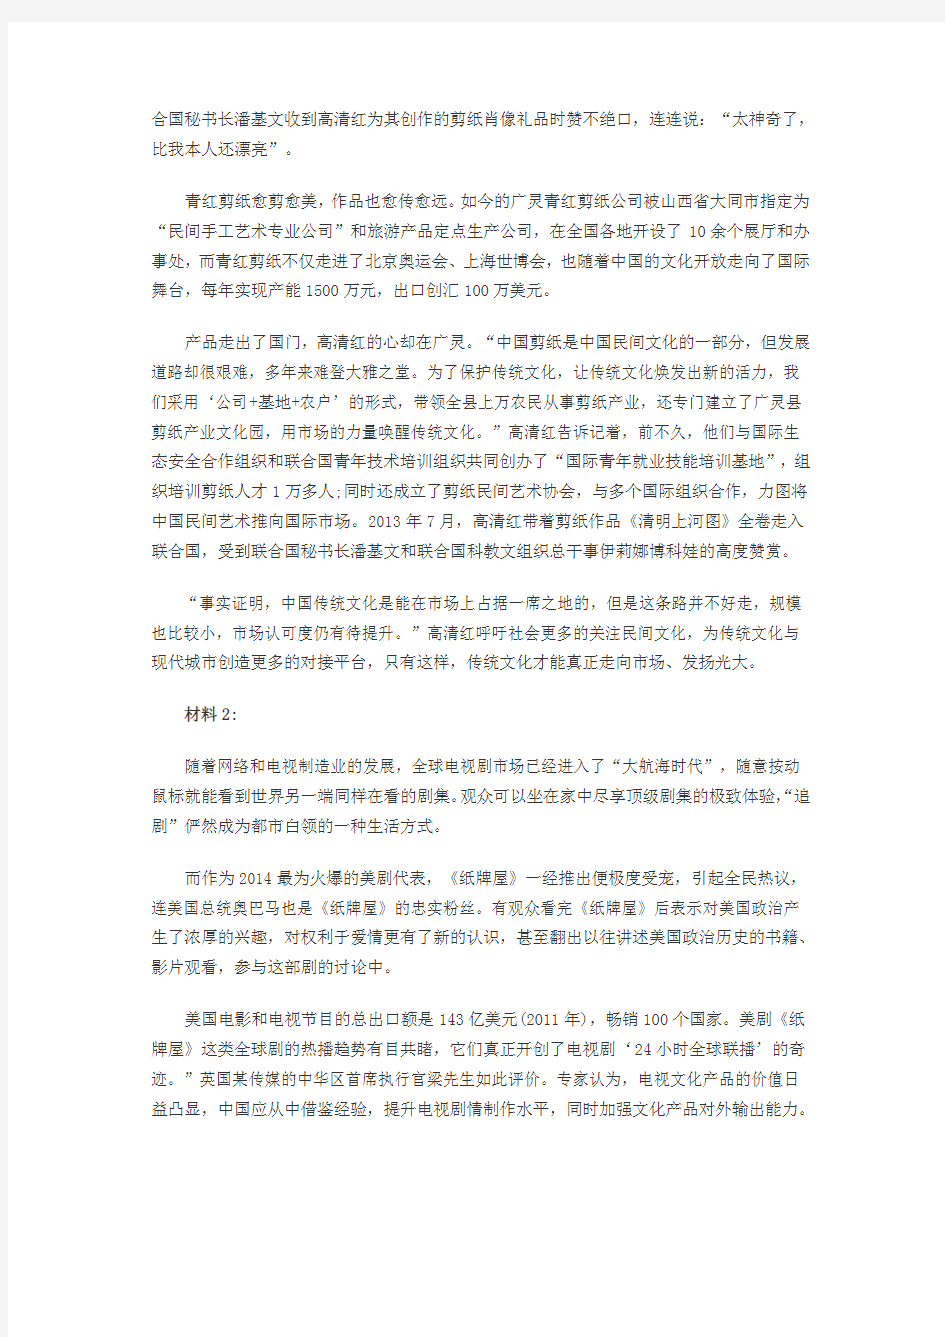 2014年重庆公务员《申论》真题及答案解析